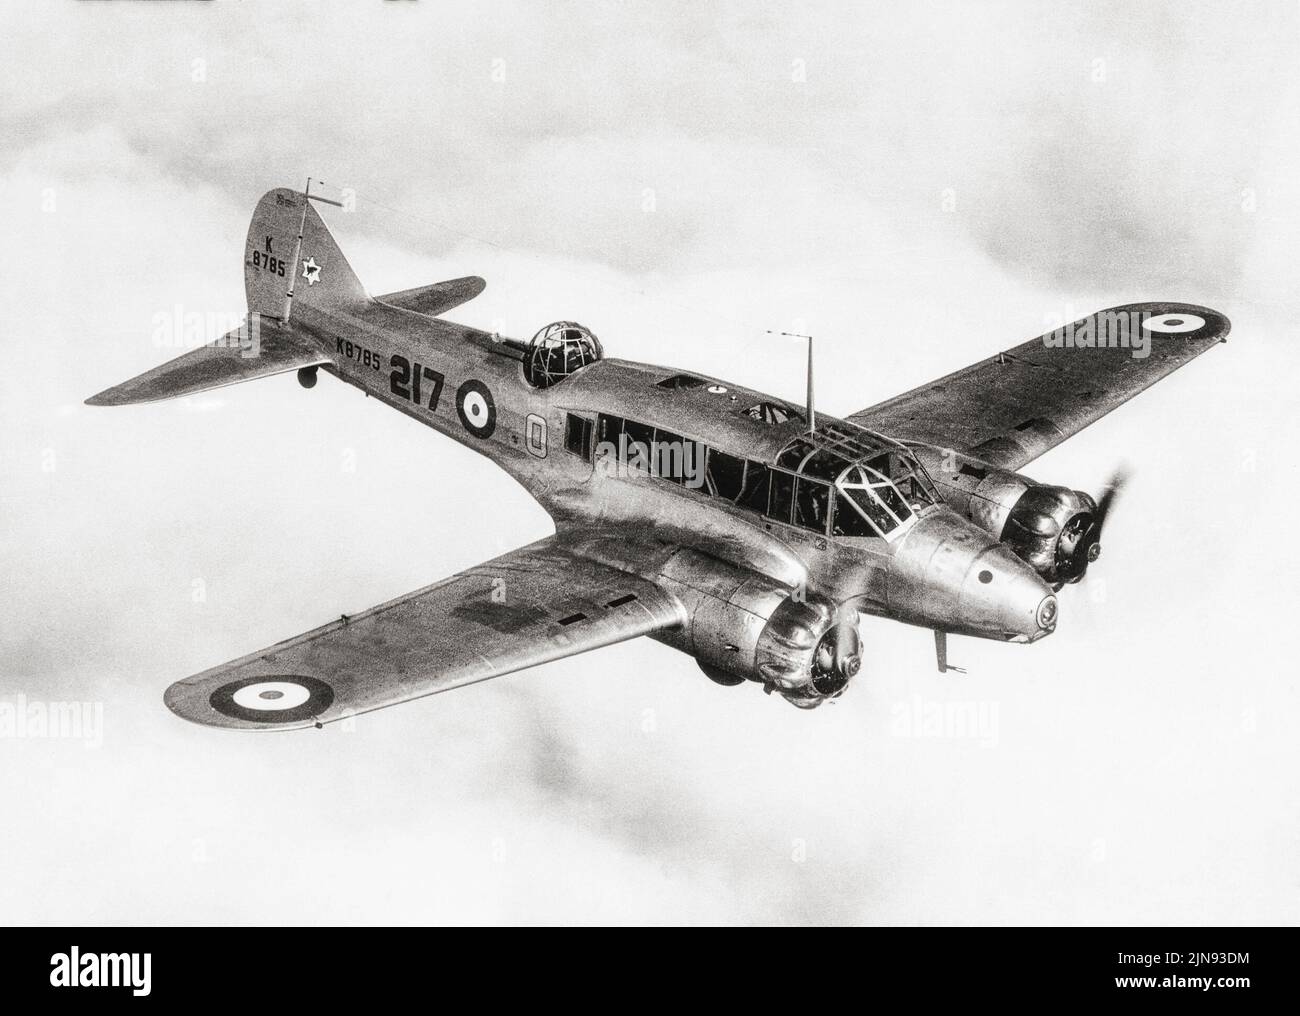 Avro Anson Mark 1 No.217 Squadron, in volo nel 1937. Un velivolo inglese a doppio motore e multirole che continuò a servire in una varietà di ruoli per la Royal Air Force (RAF), Fleet Air Arm (FAA), Royal Canadian Air Force (RCAF) e numerose altre forze aeree prima, durante e dopo la seconda guerra mondiale. Foto Stock